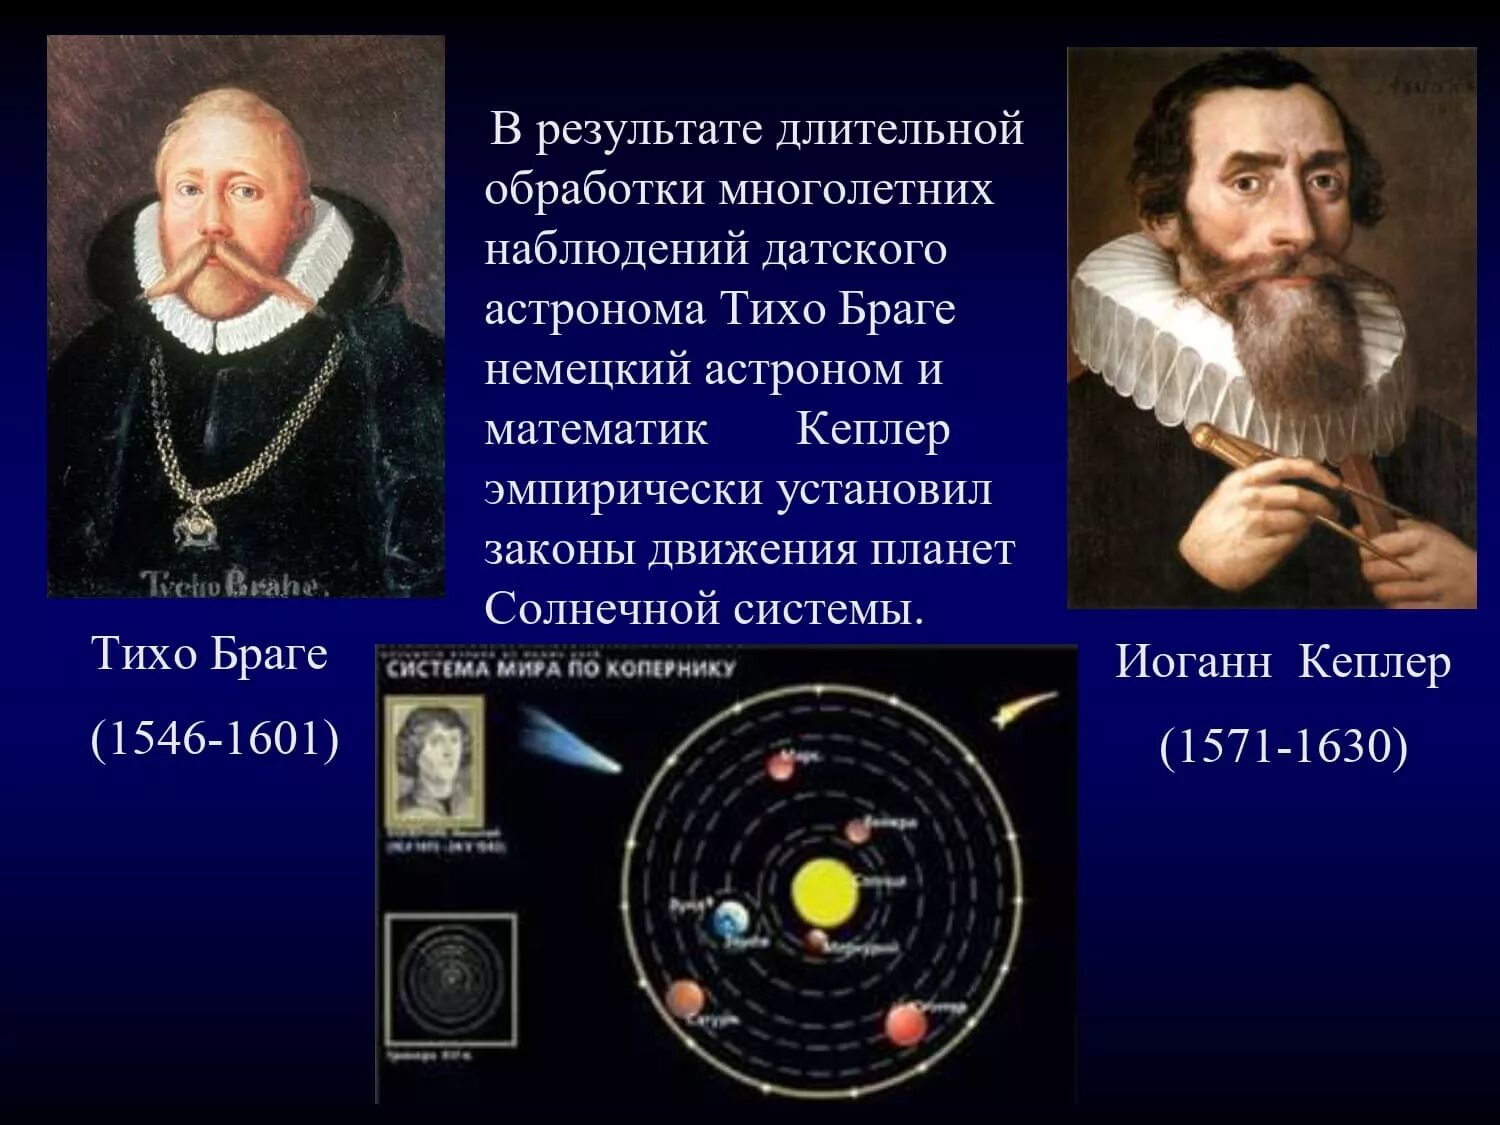 Астроном открывший движение планет. Иоганн Кеплер законы движения планет. Тихо Браге и Кеплер. Астроном Иоганн Кеплер. Иоганн Кеплер Небесная механика.